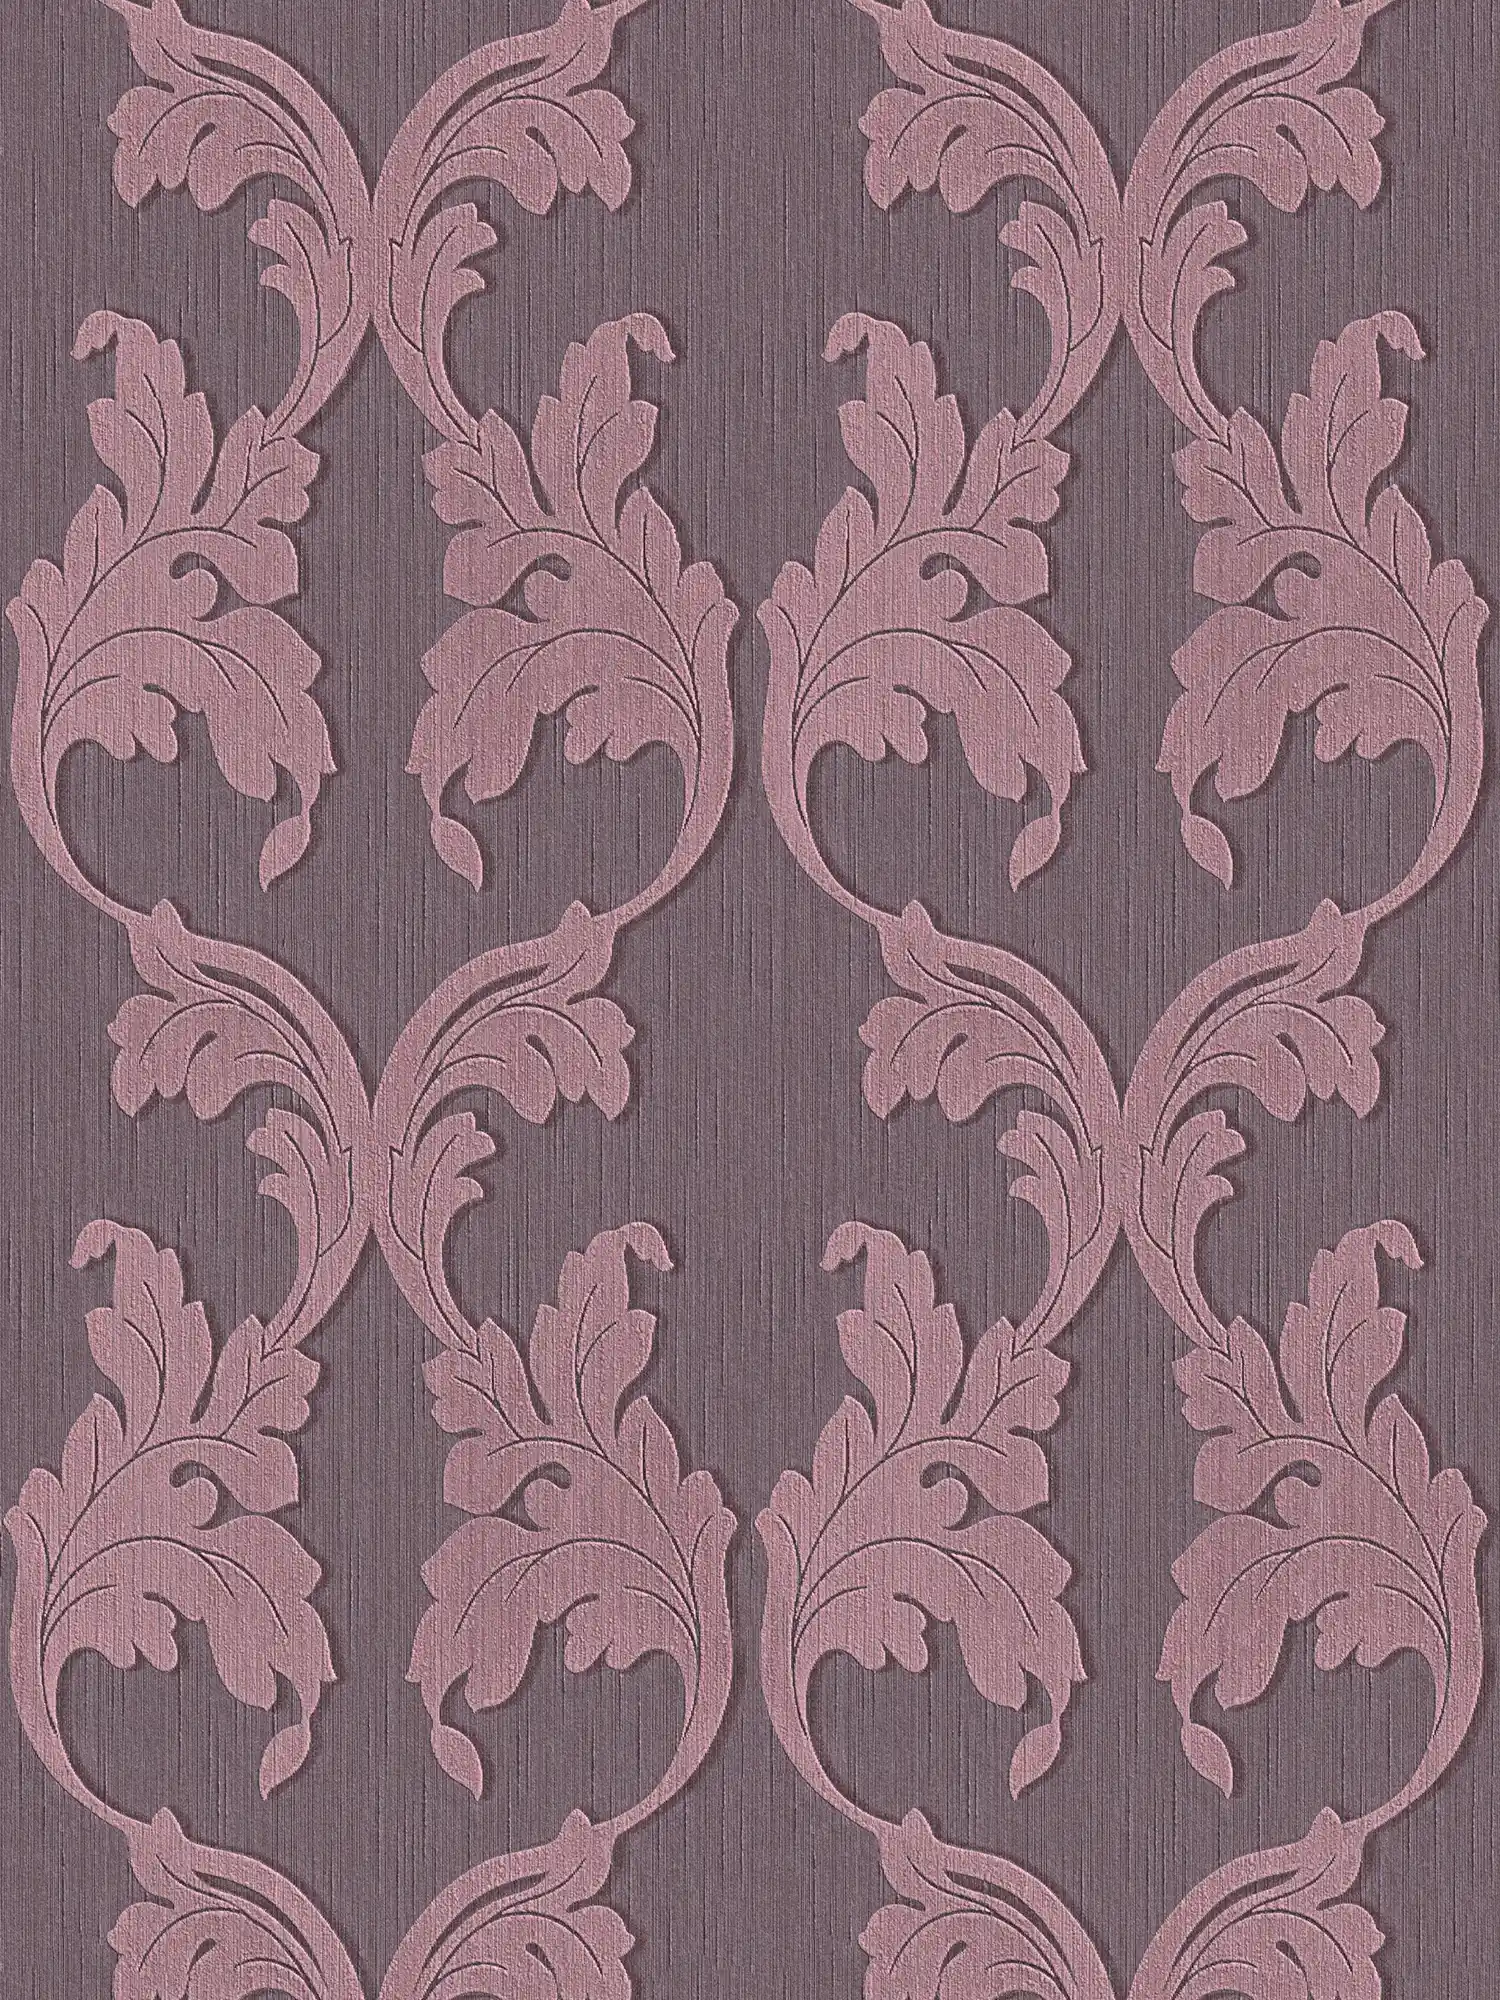 papier peint en papier textile avec rinceaux baroques - lilas
